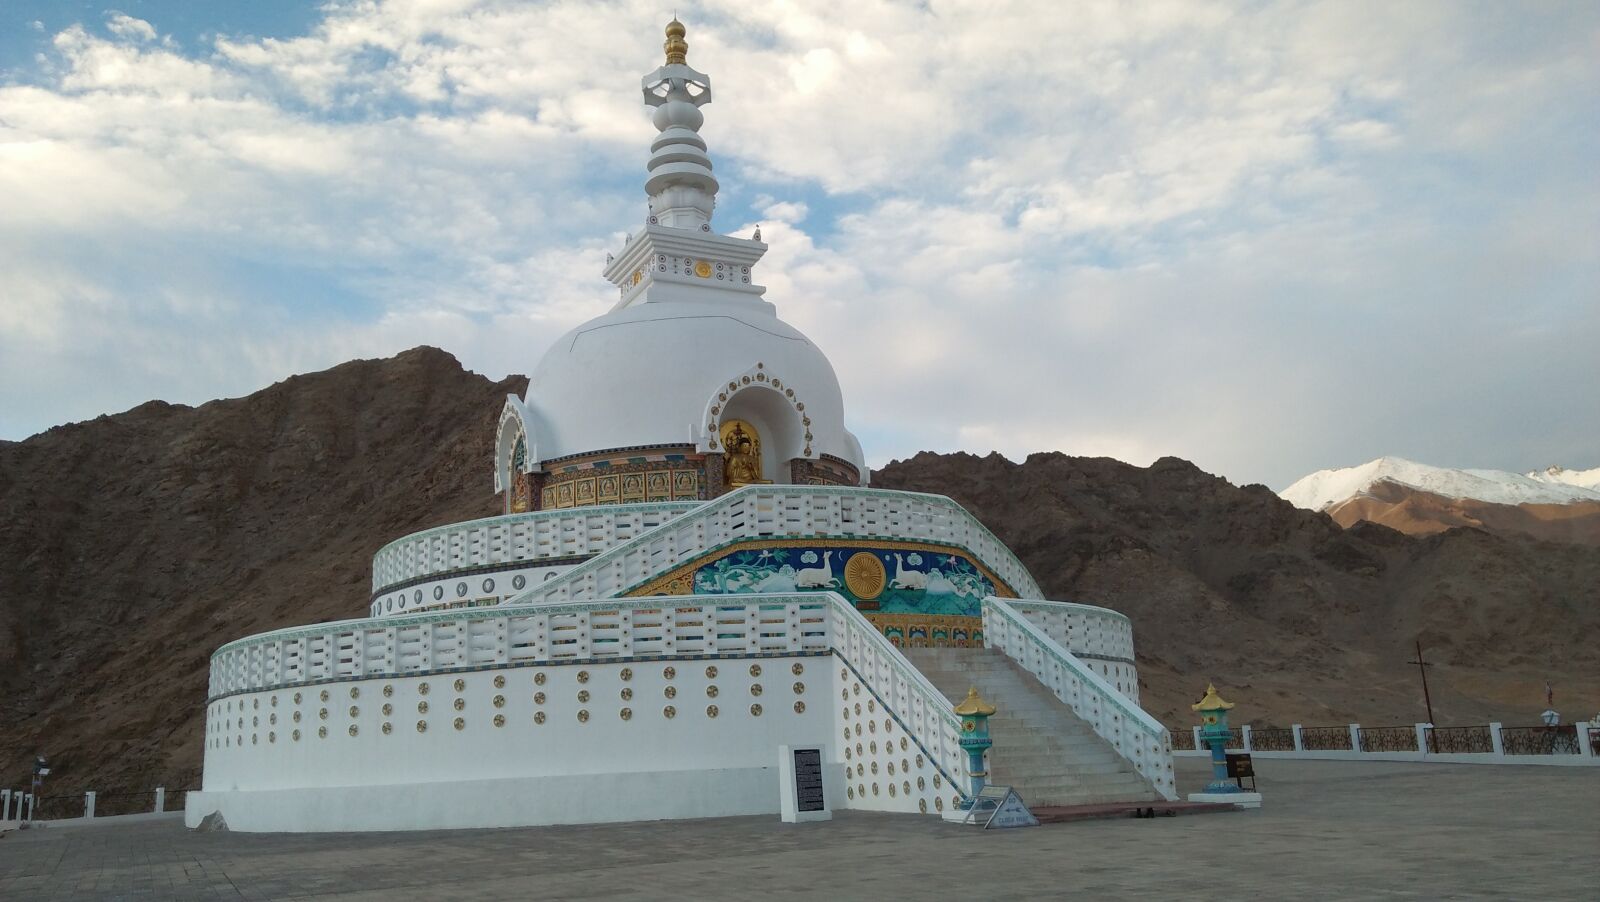 OPPO A37fw-International sample photo. Shanti stupa, stupa, ladakh photography